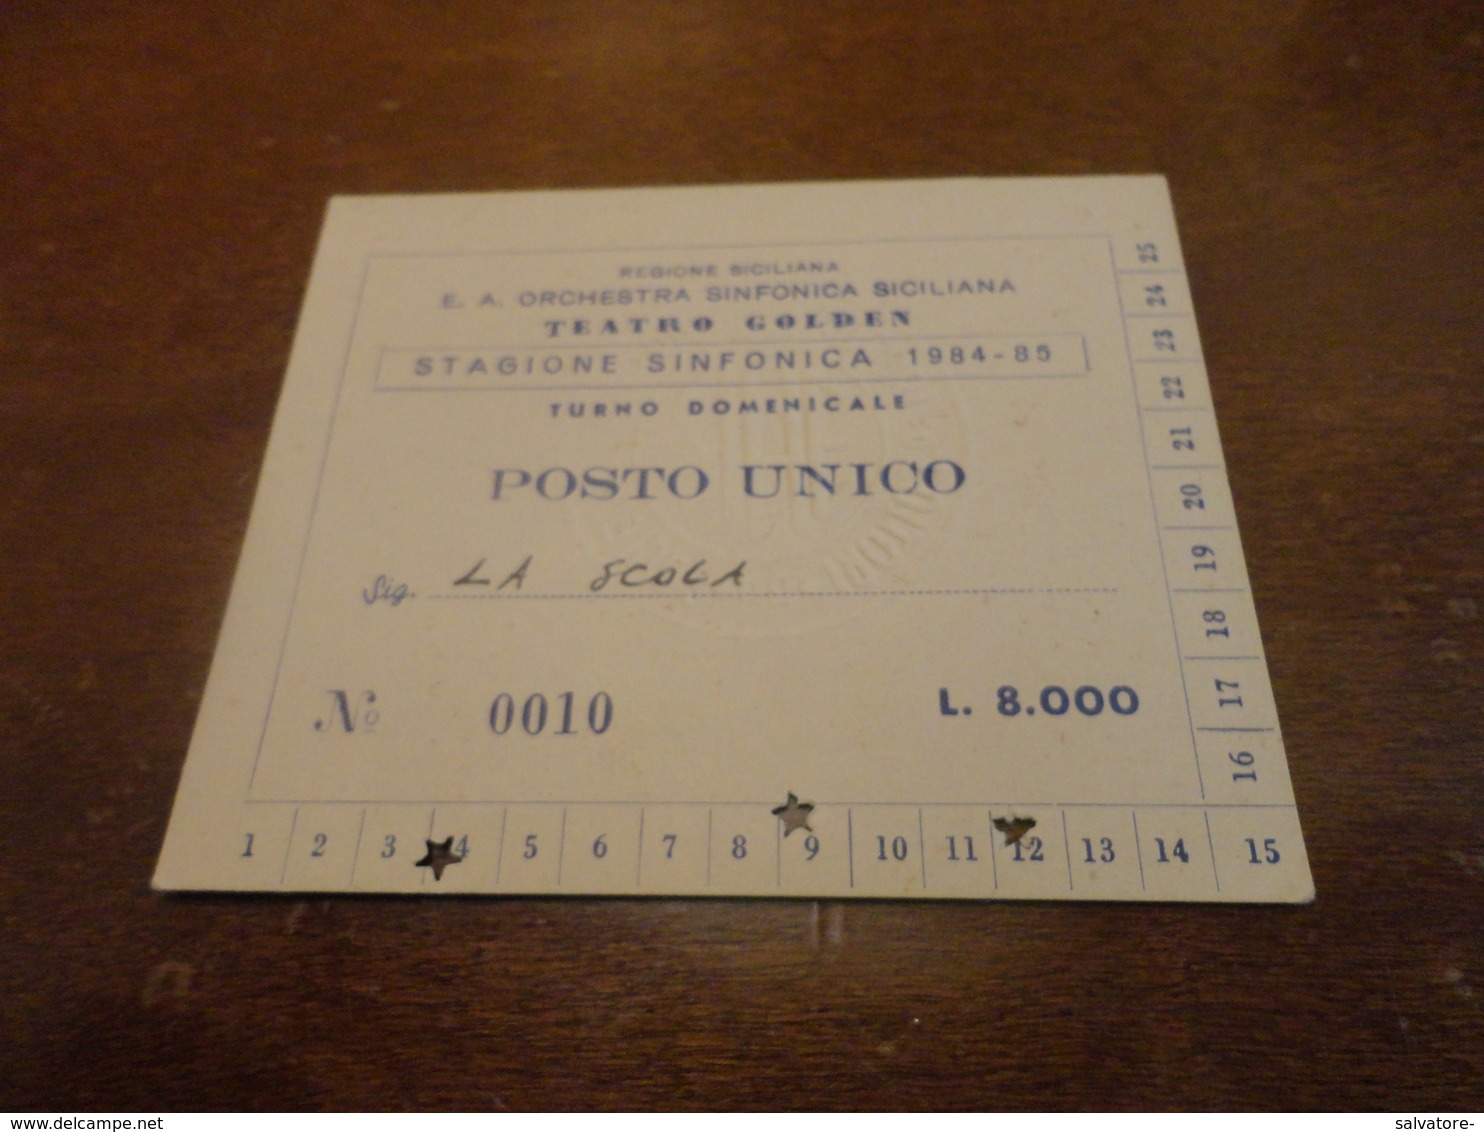 BIGLIETTO INGRESSO STAGIONE SINFONICA SICILIANA TEATREO GOLDEN 1984-1985 - Tickets - Entradas